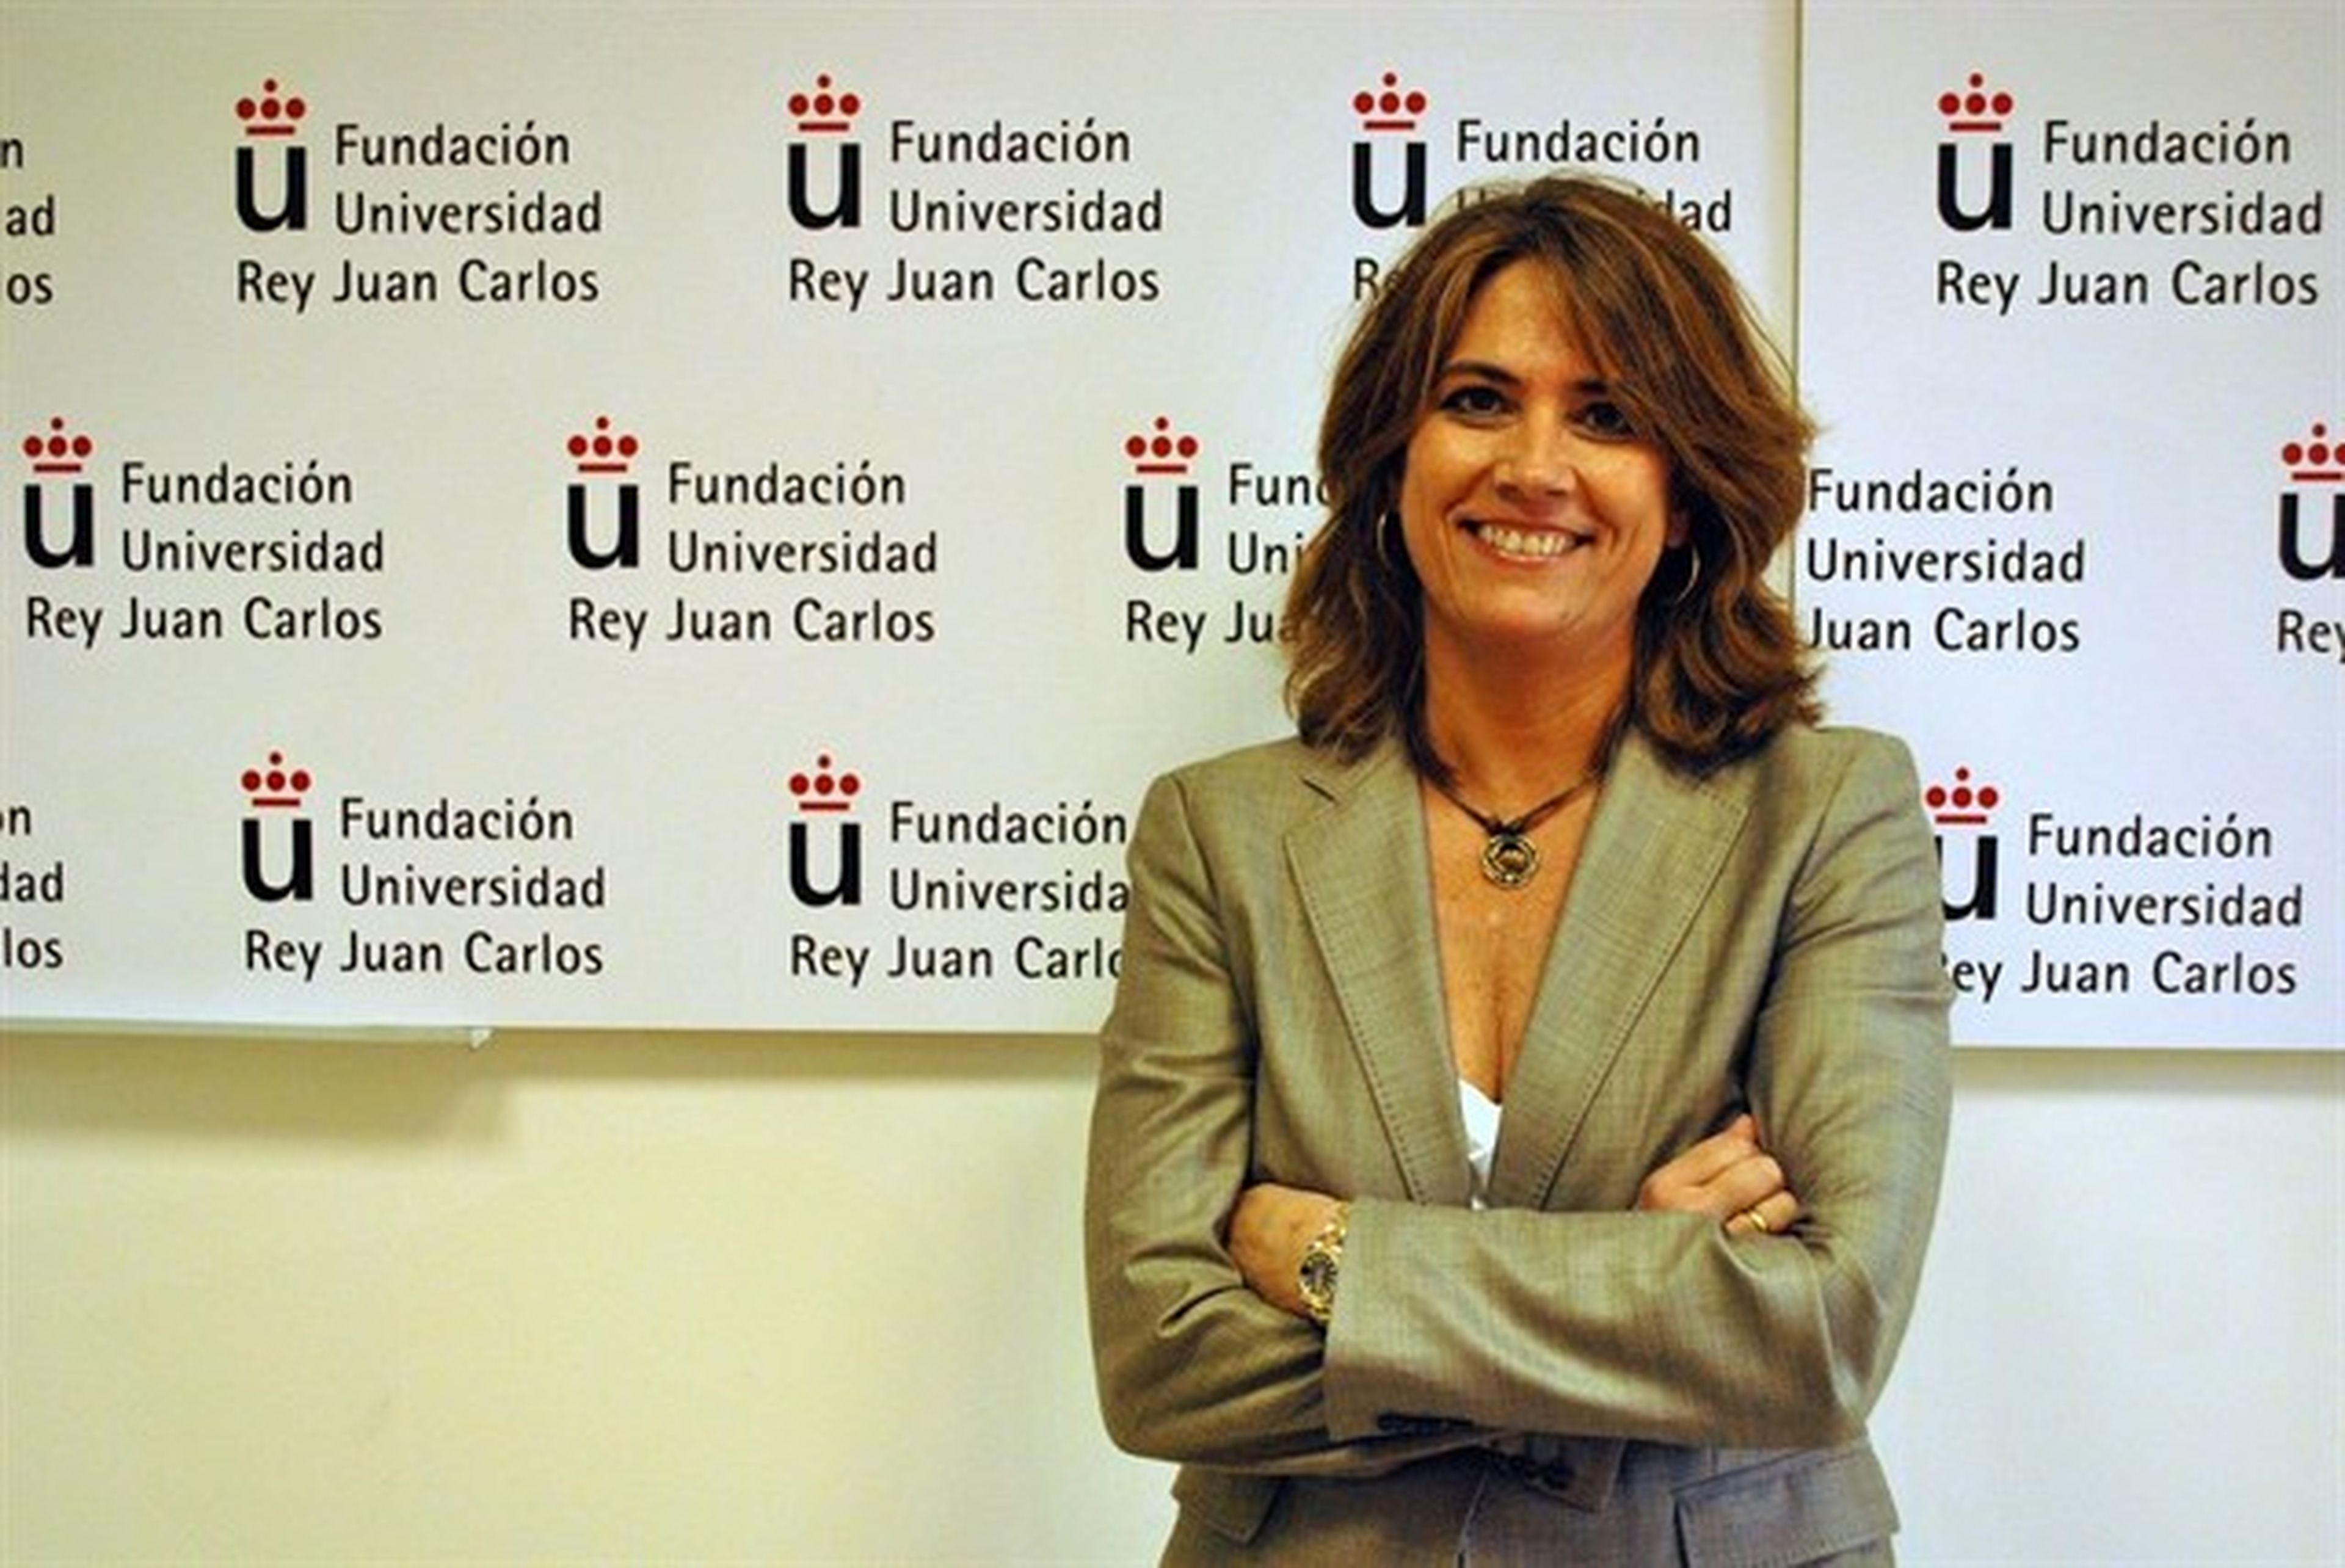 Dolores Delgado, ministra de Justicia